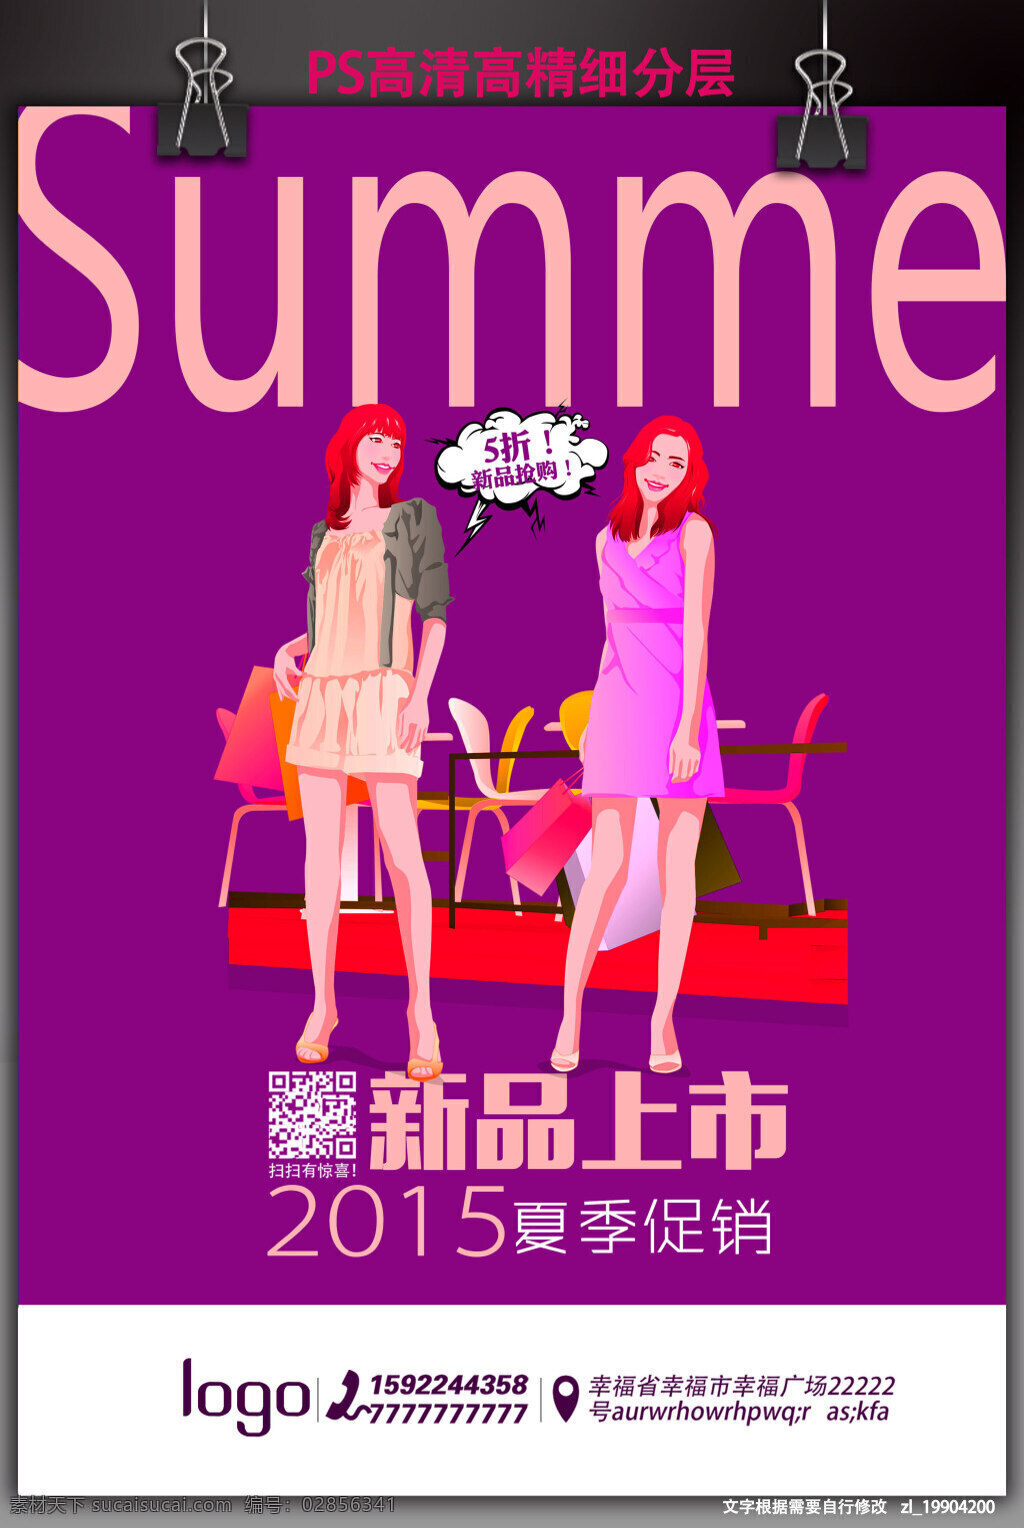 夏季 服饰 促销 海报 夏季促销海报 美女卡通 简约 紫色